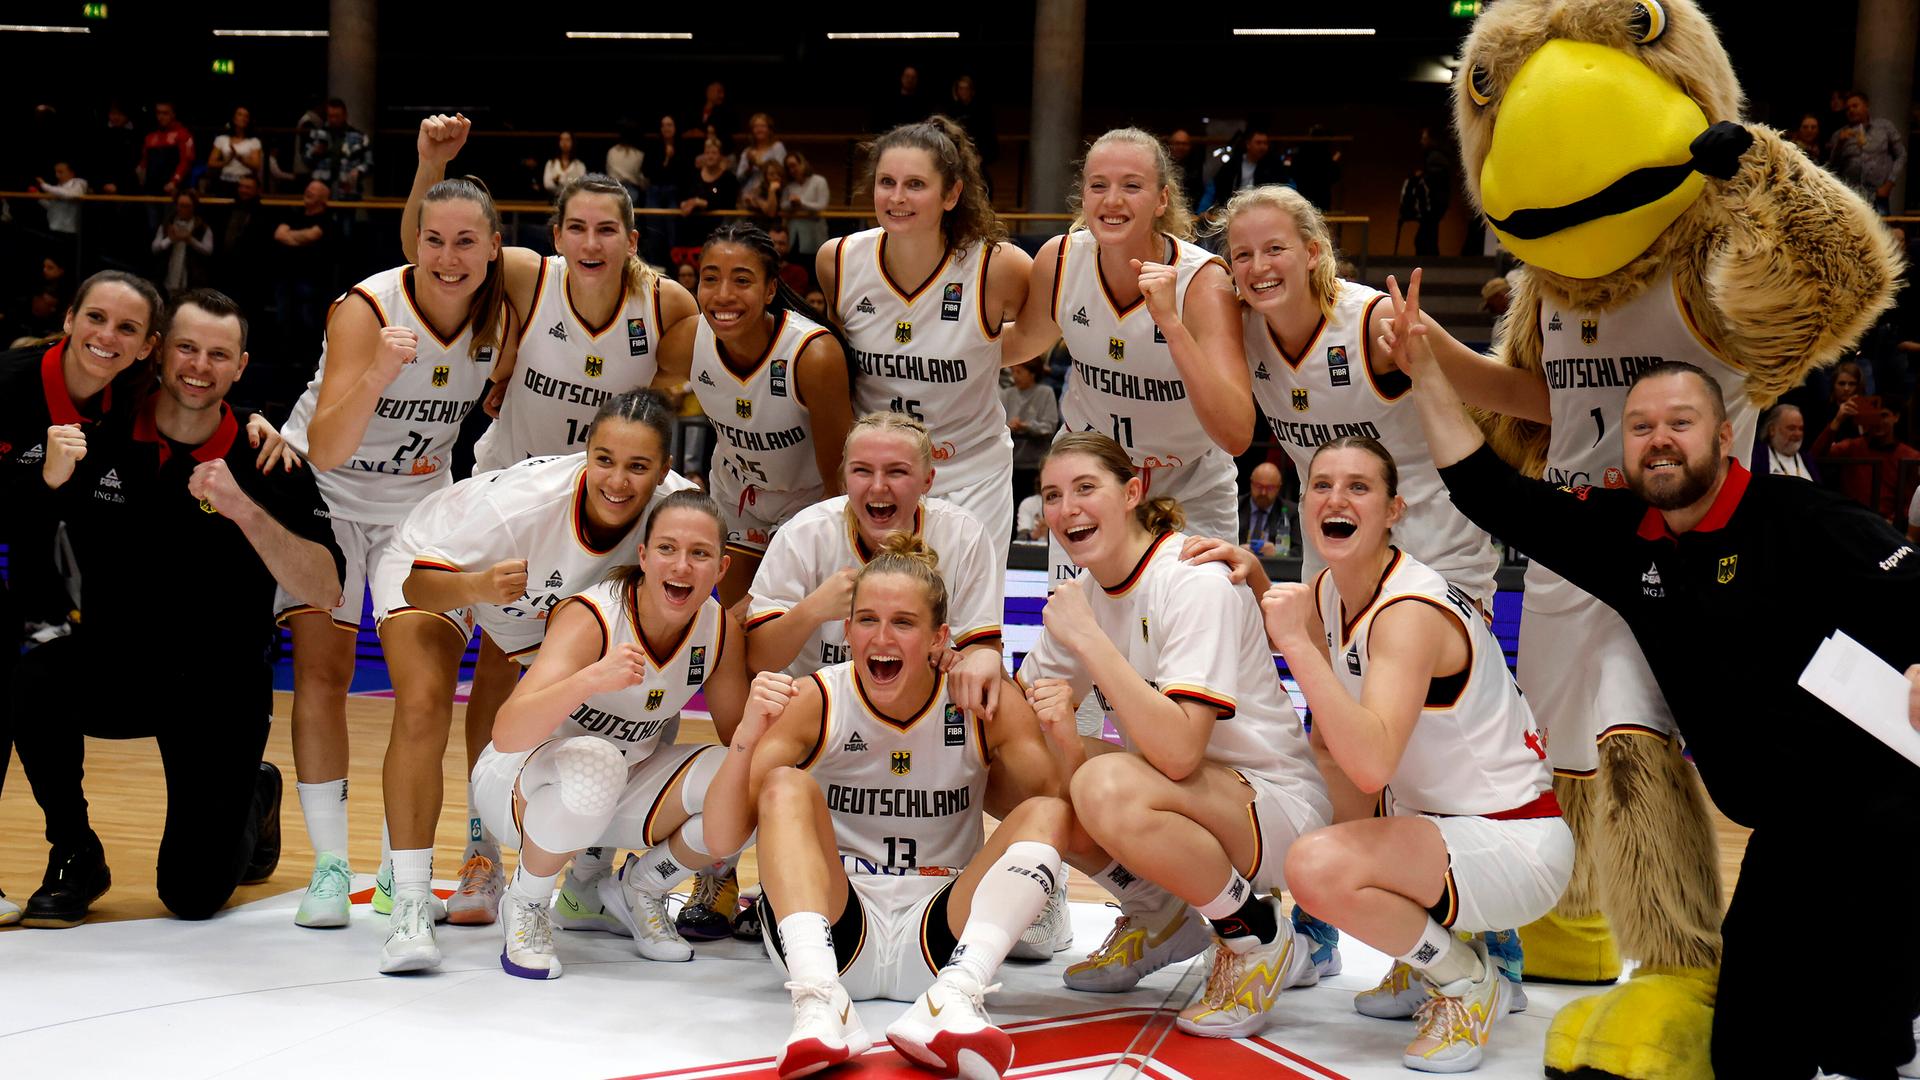 Die deutschen Basketball-Spielerinnen sitzen in einem Halbkreis auf dem Boden und jubeln über ihren Sieg.